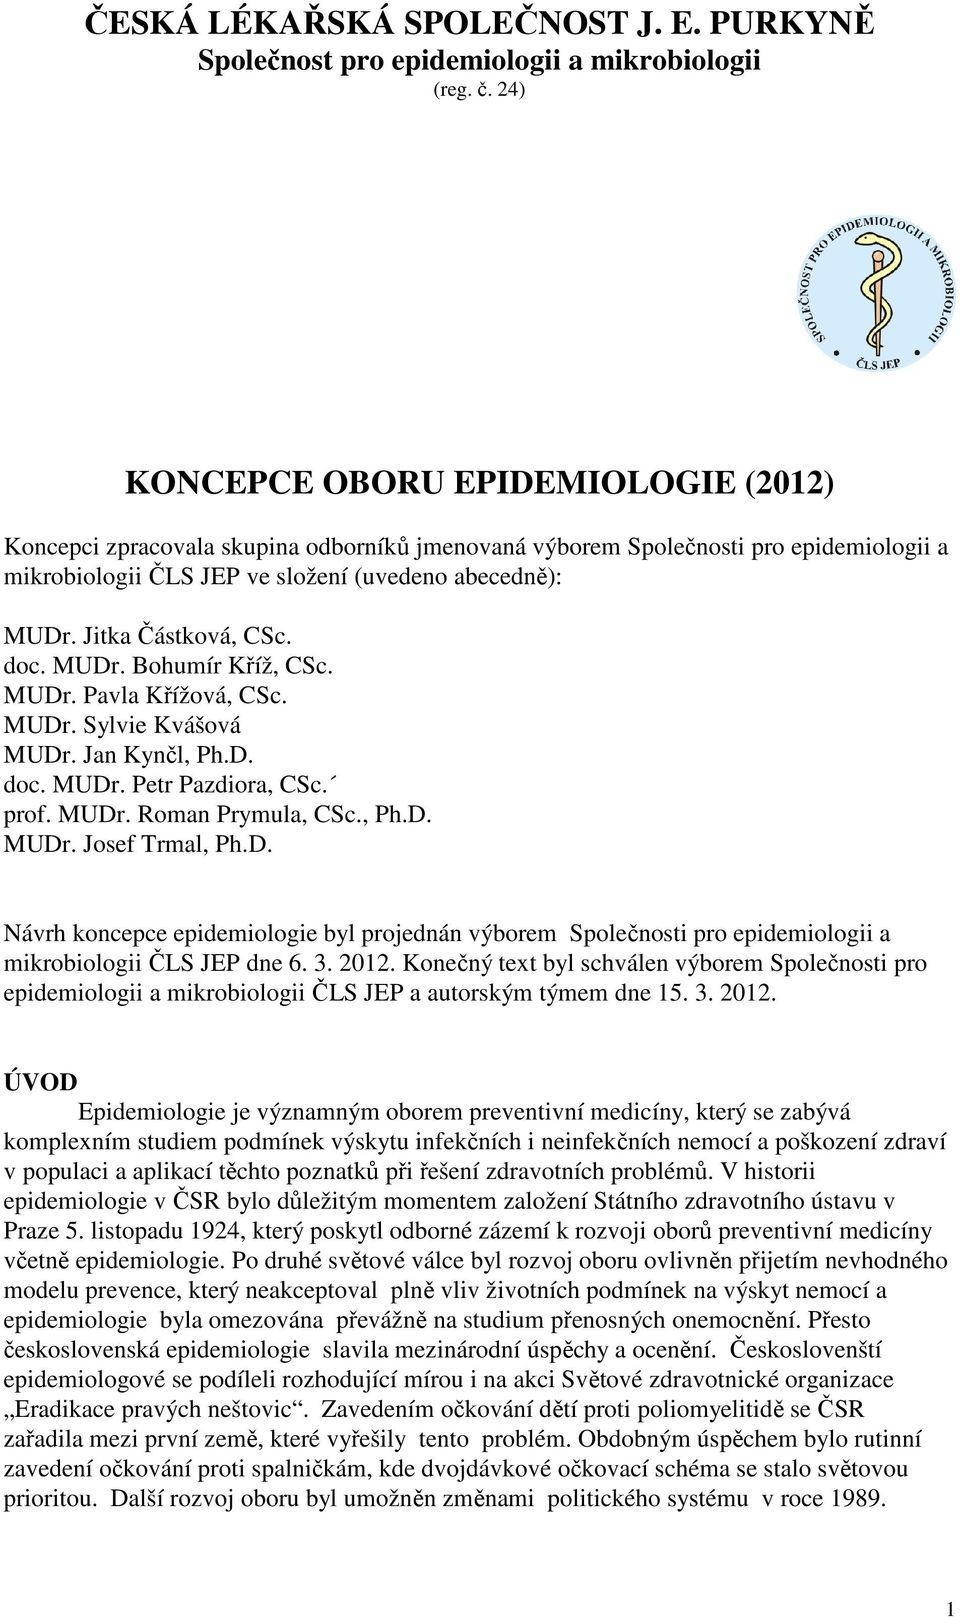 D. Návrh koncepce epidemiologie byl projednán výborem Společnosti pro epidemiologii a mikrobiologii ČLS JEP dne 6. 3. 2012.